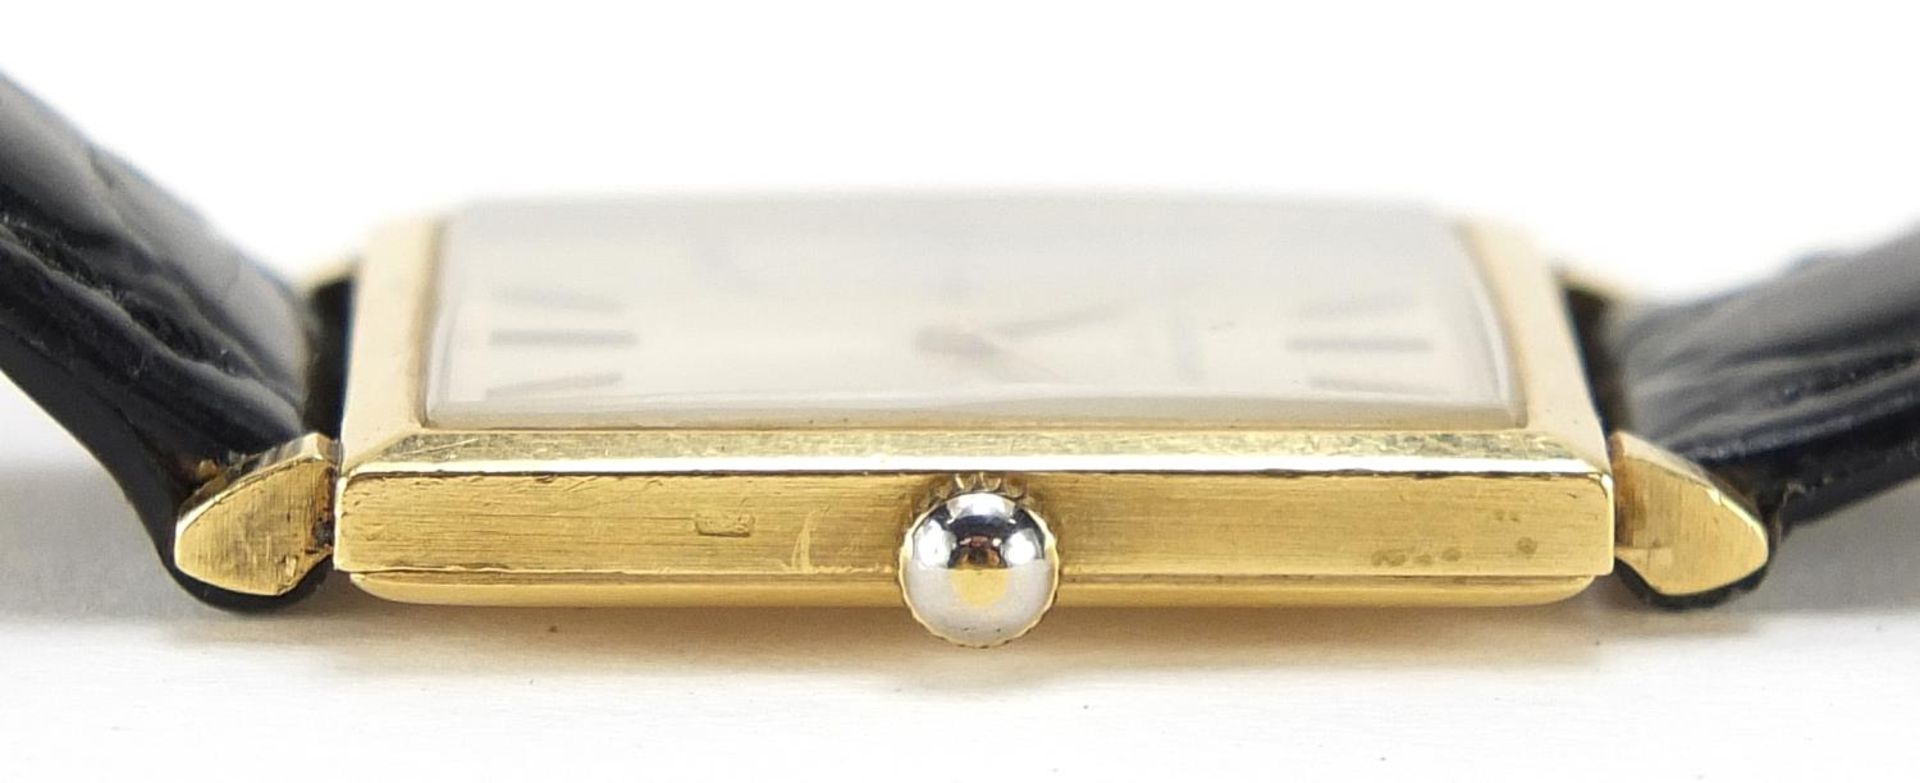 Vacheron & Constantin, 18ct gold gentlemen's wristwatch, the movement numbered 1003, 25mm wide, - Image 6 of 6